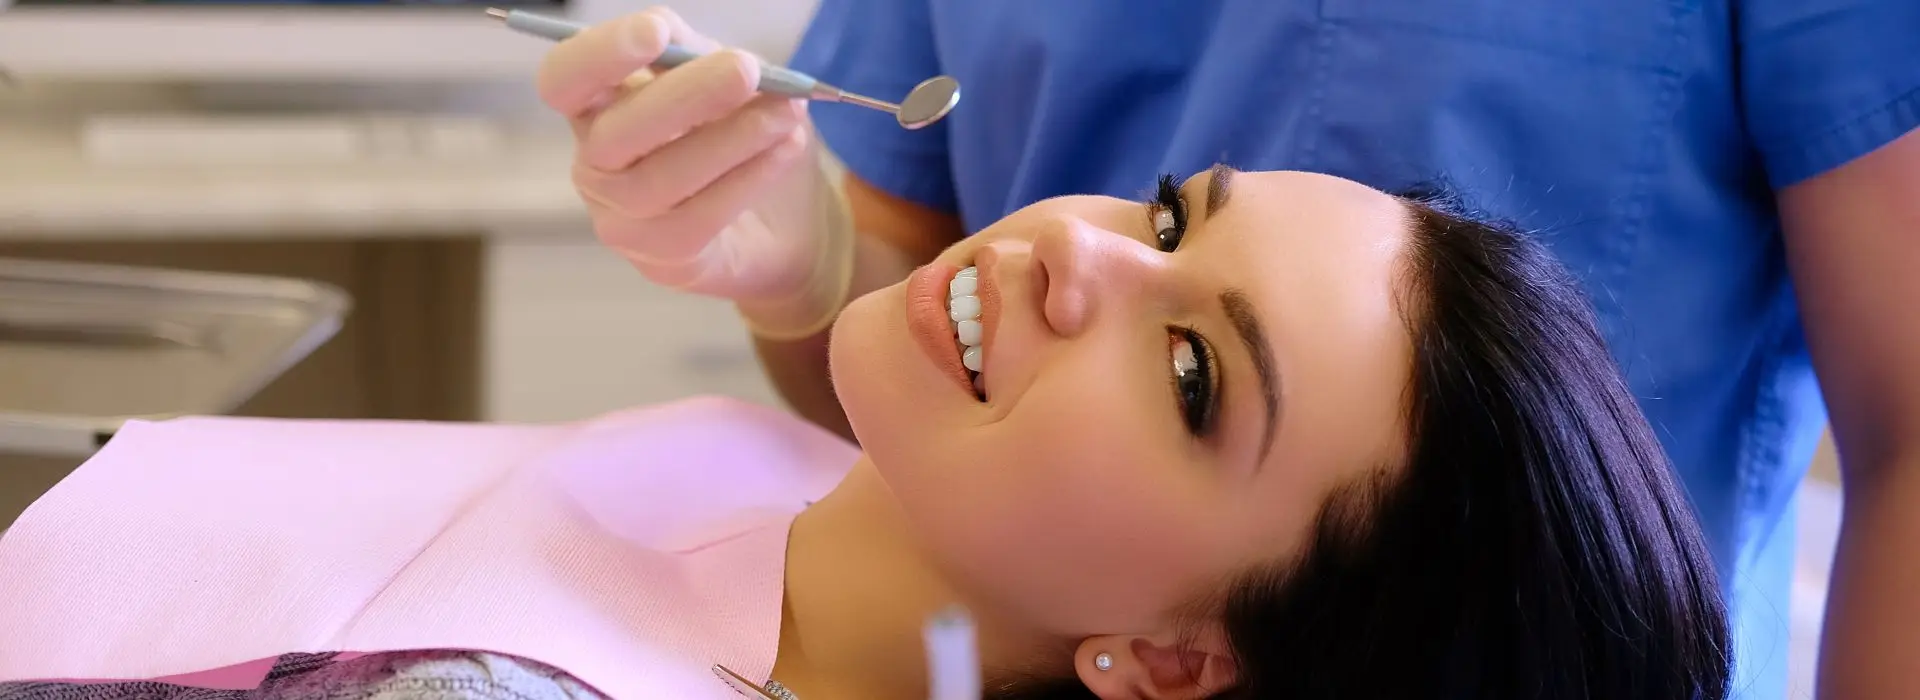 Лечение зубов с применением элайнеров